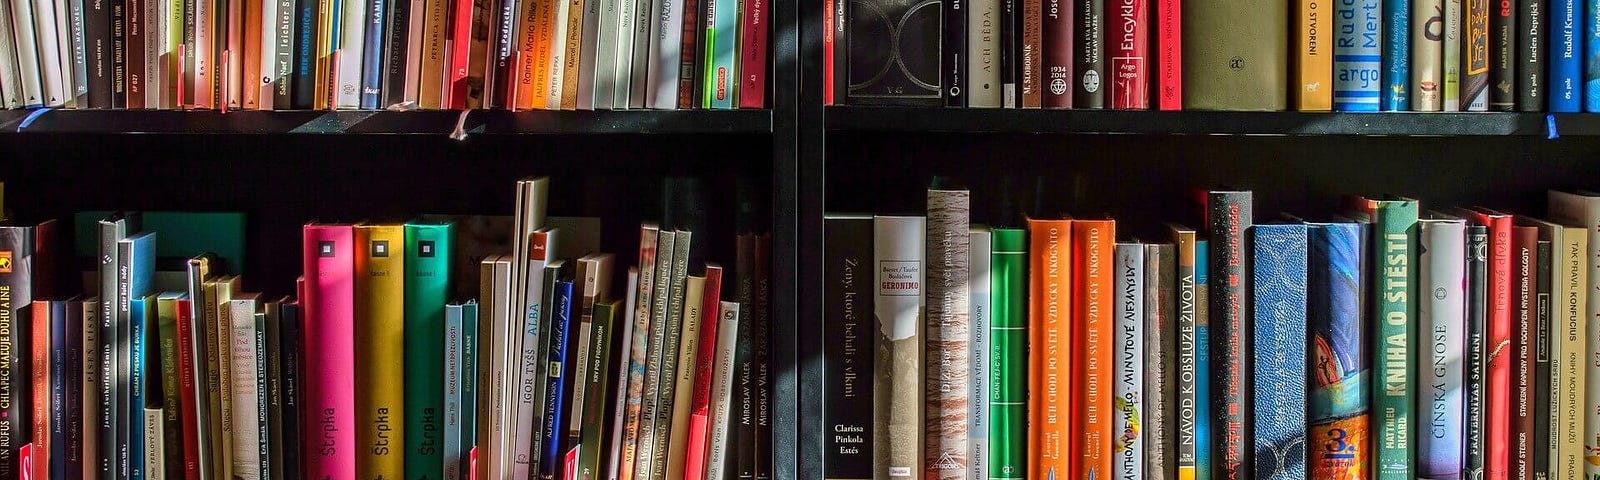 A book shelf.